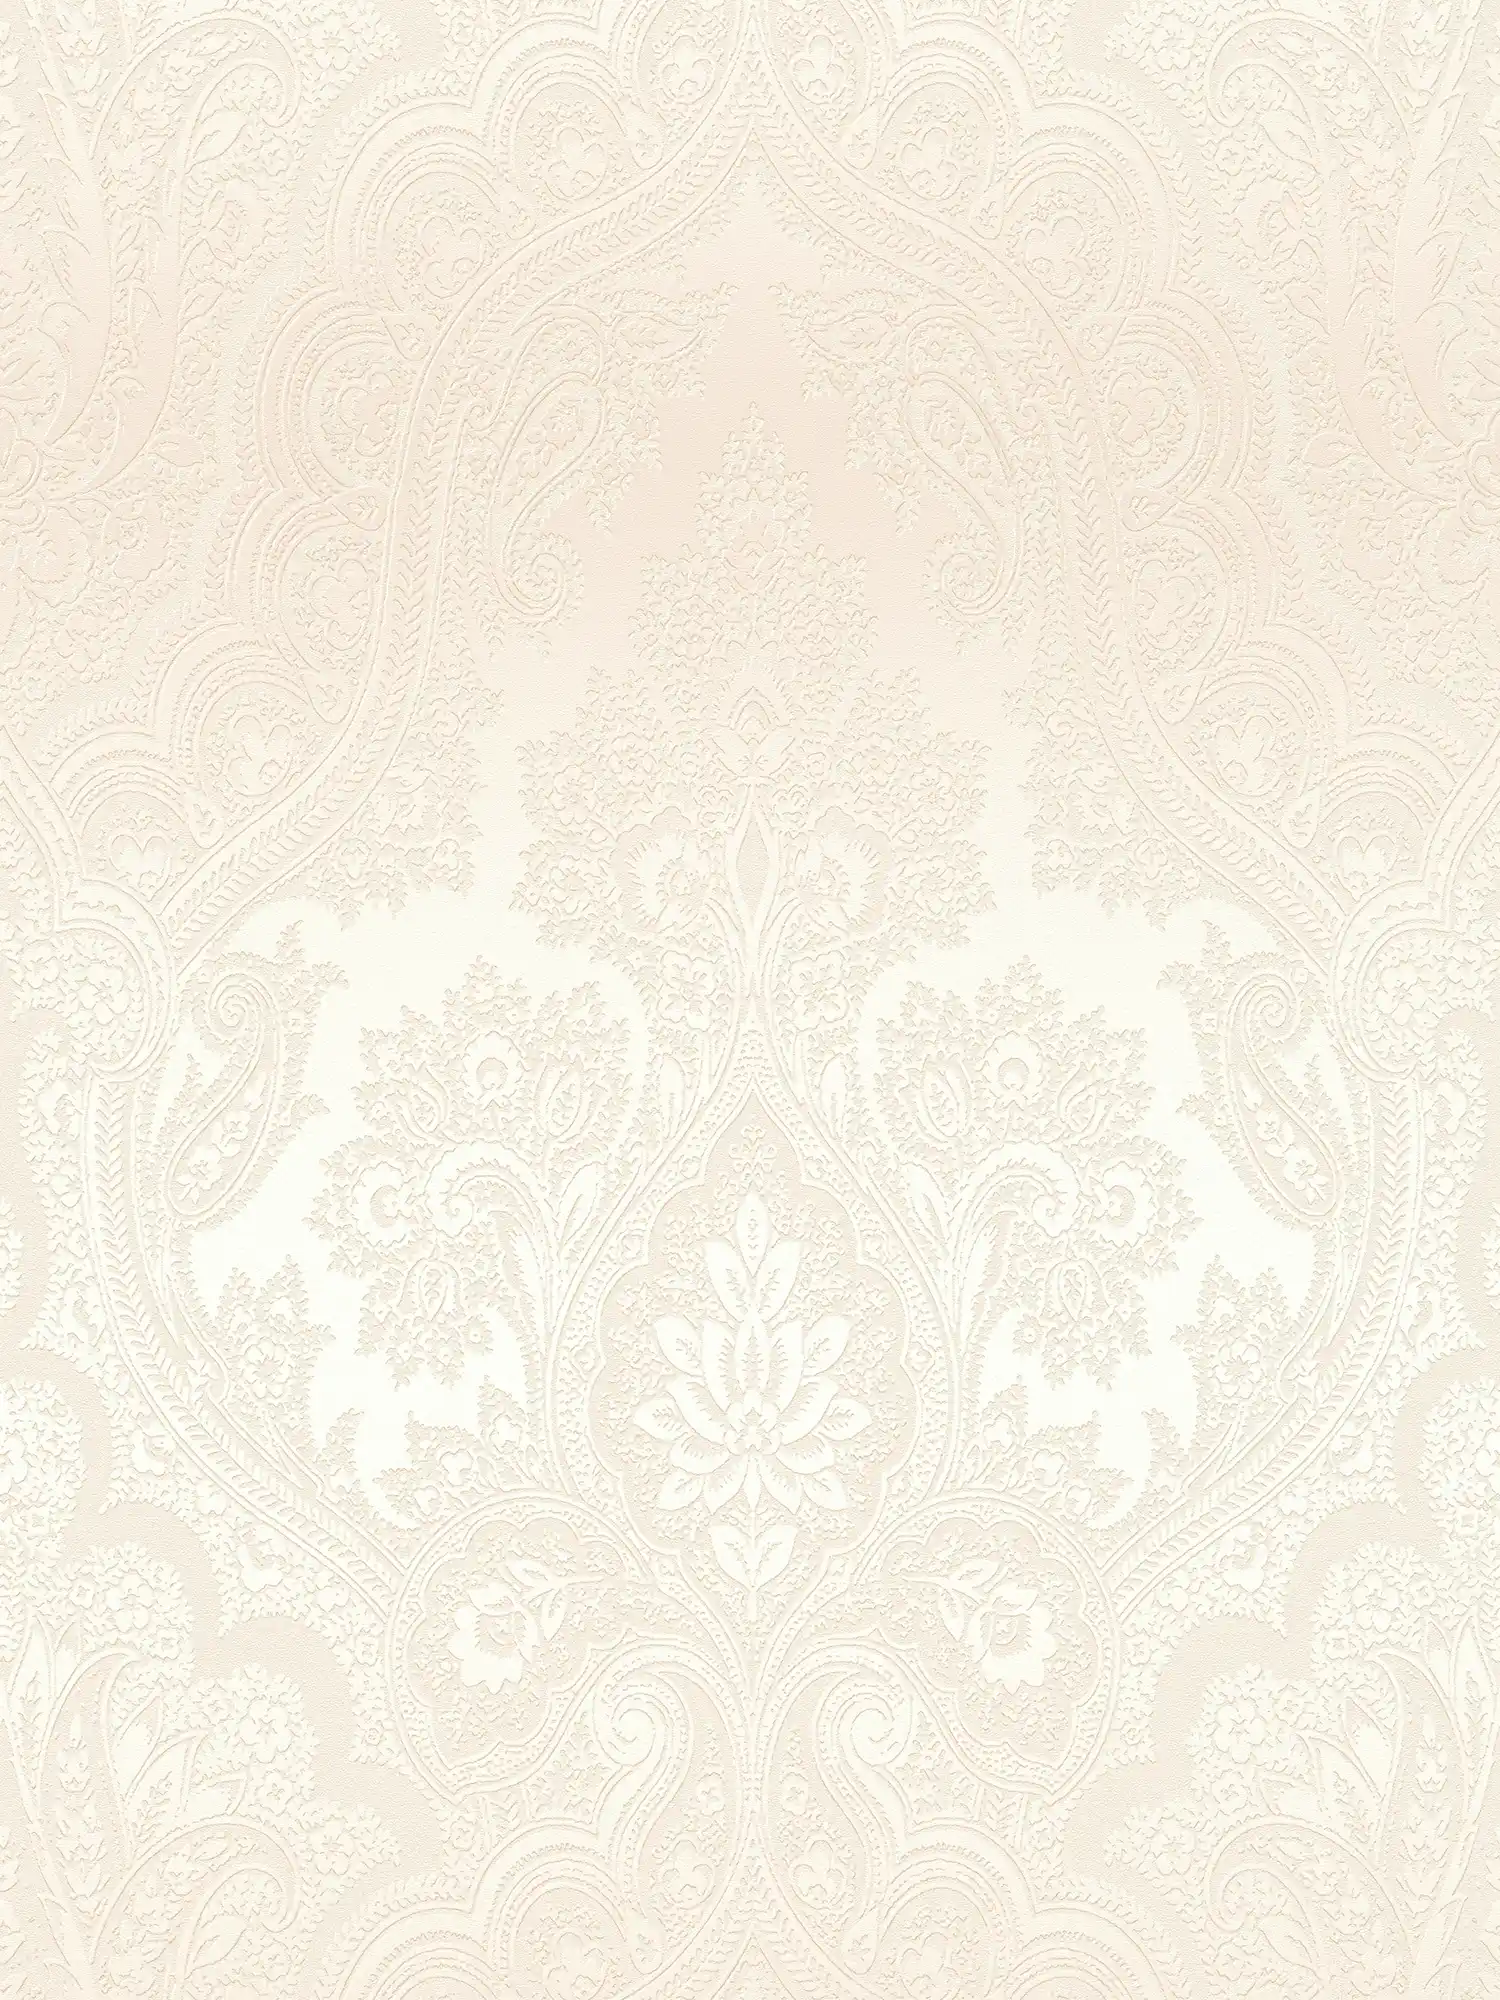 Boho behang ivoor met ornament patroon - metallic, beige
